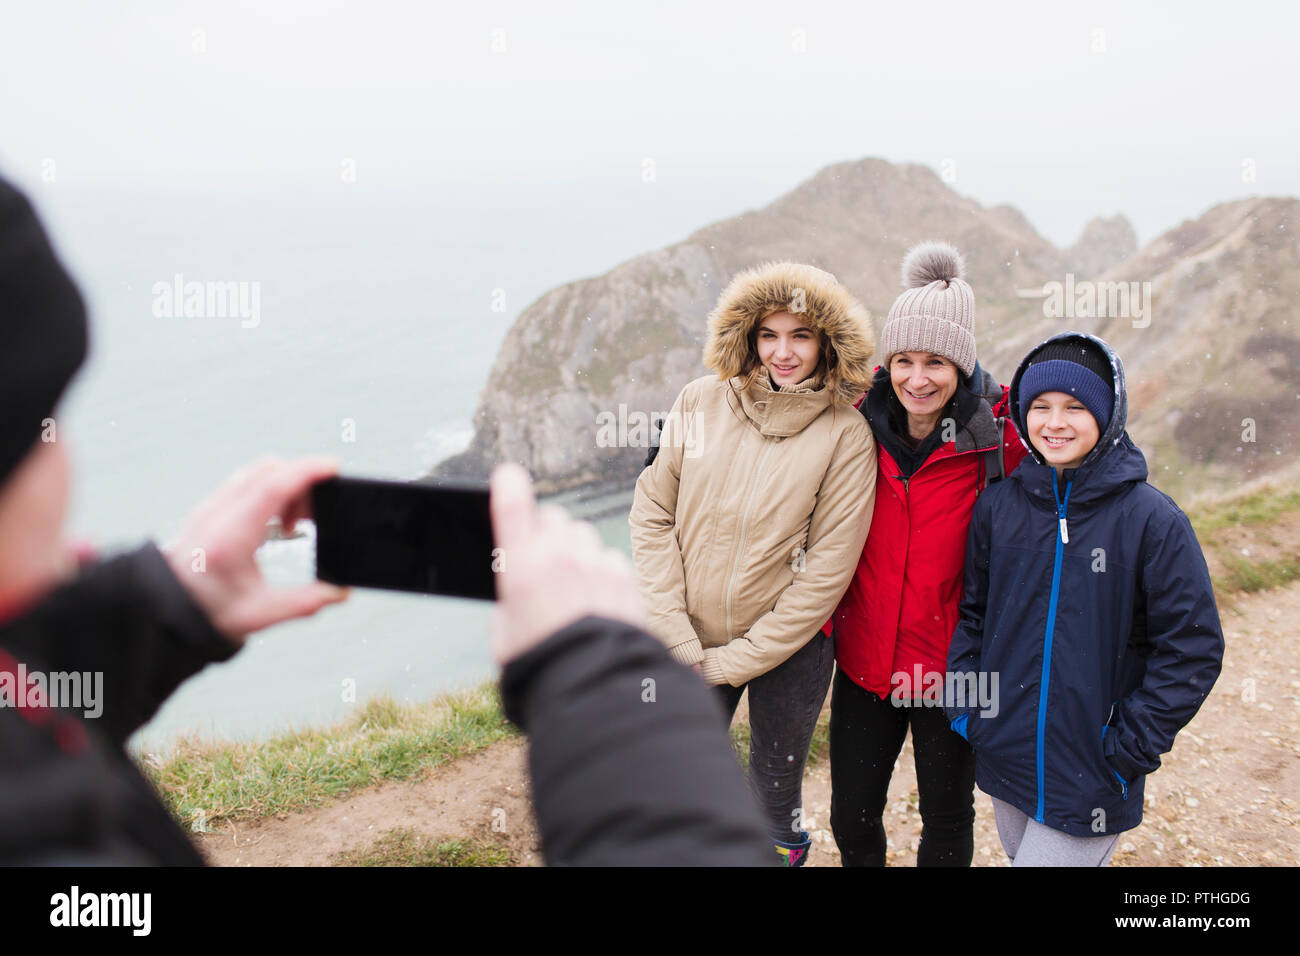 Mann mit Kamera Handy fotografieren Familie in warme Kleidung auf einer Klippe mit Blick auf den Ozean Stockfoto